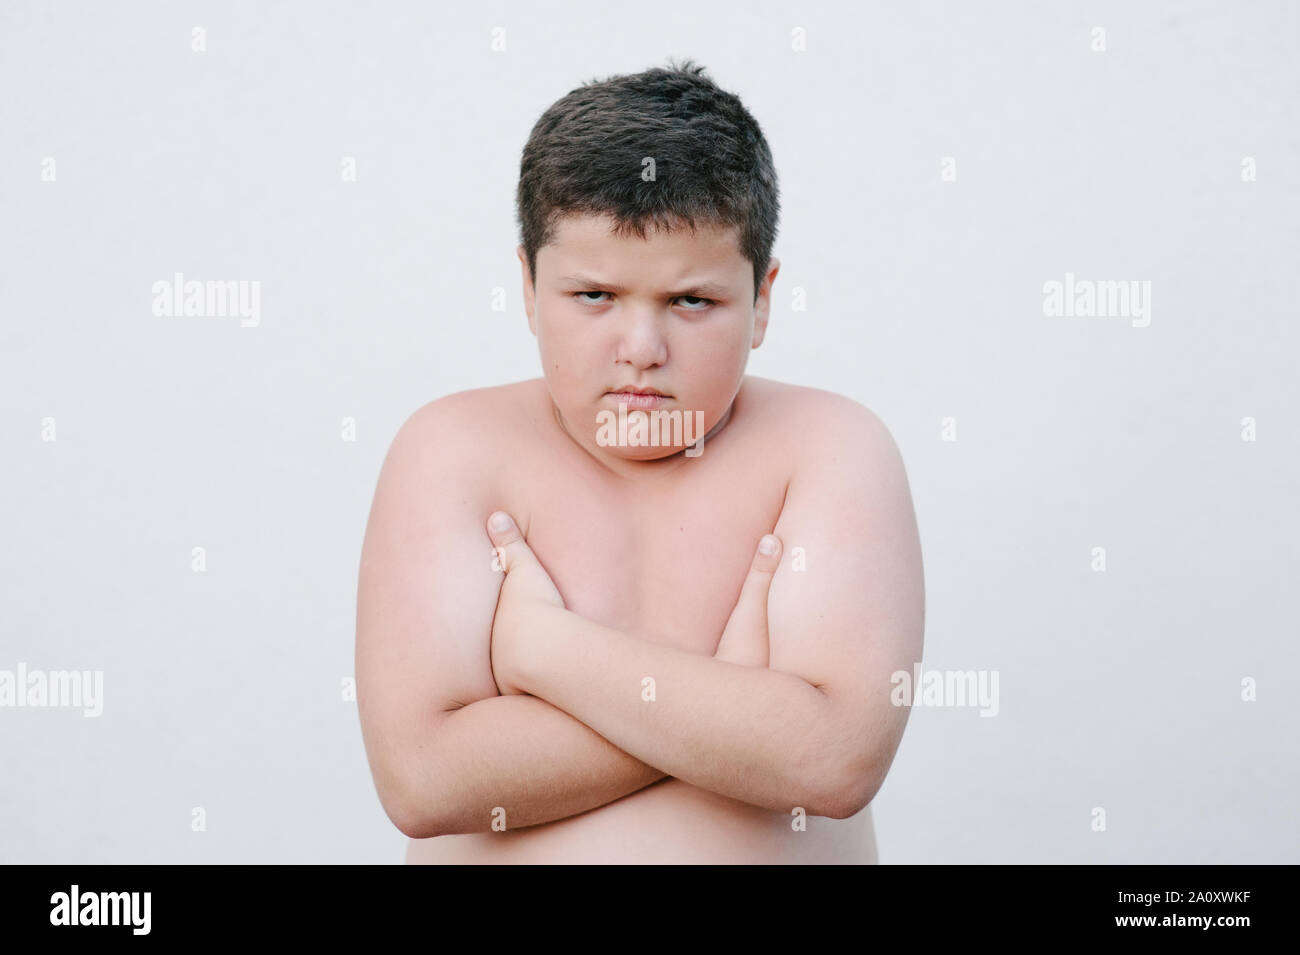 Dicken fetten kleinen Jungen mit Verärgerten Gesicht stehen auf helle Wand Stockfoto